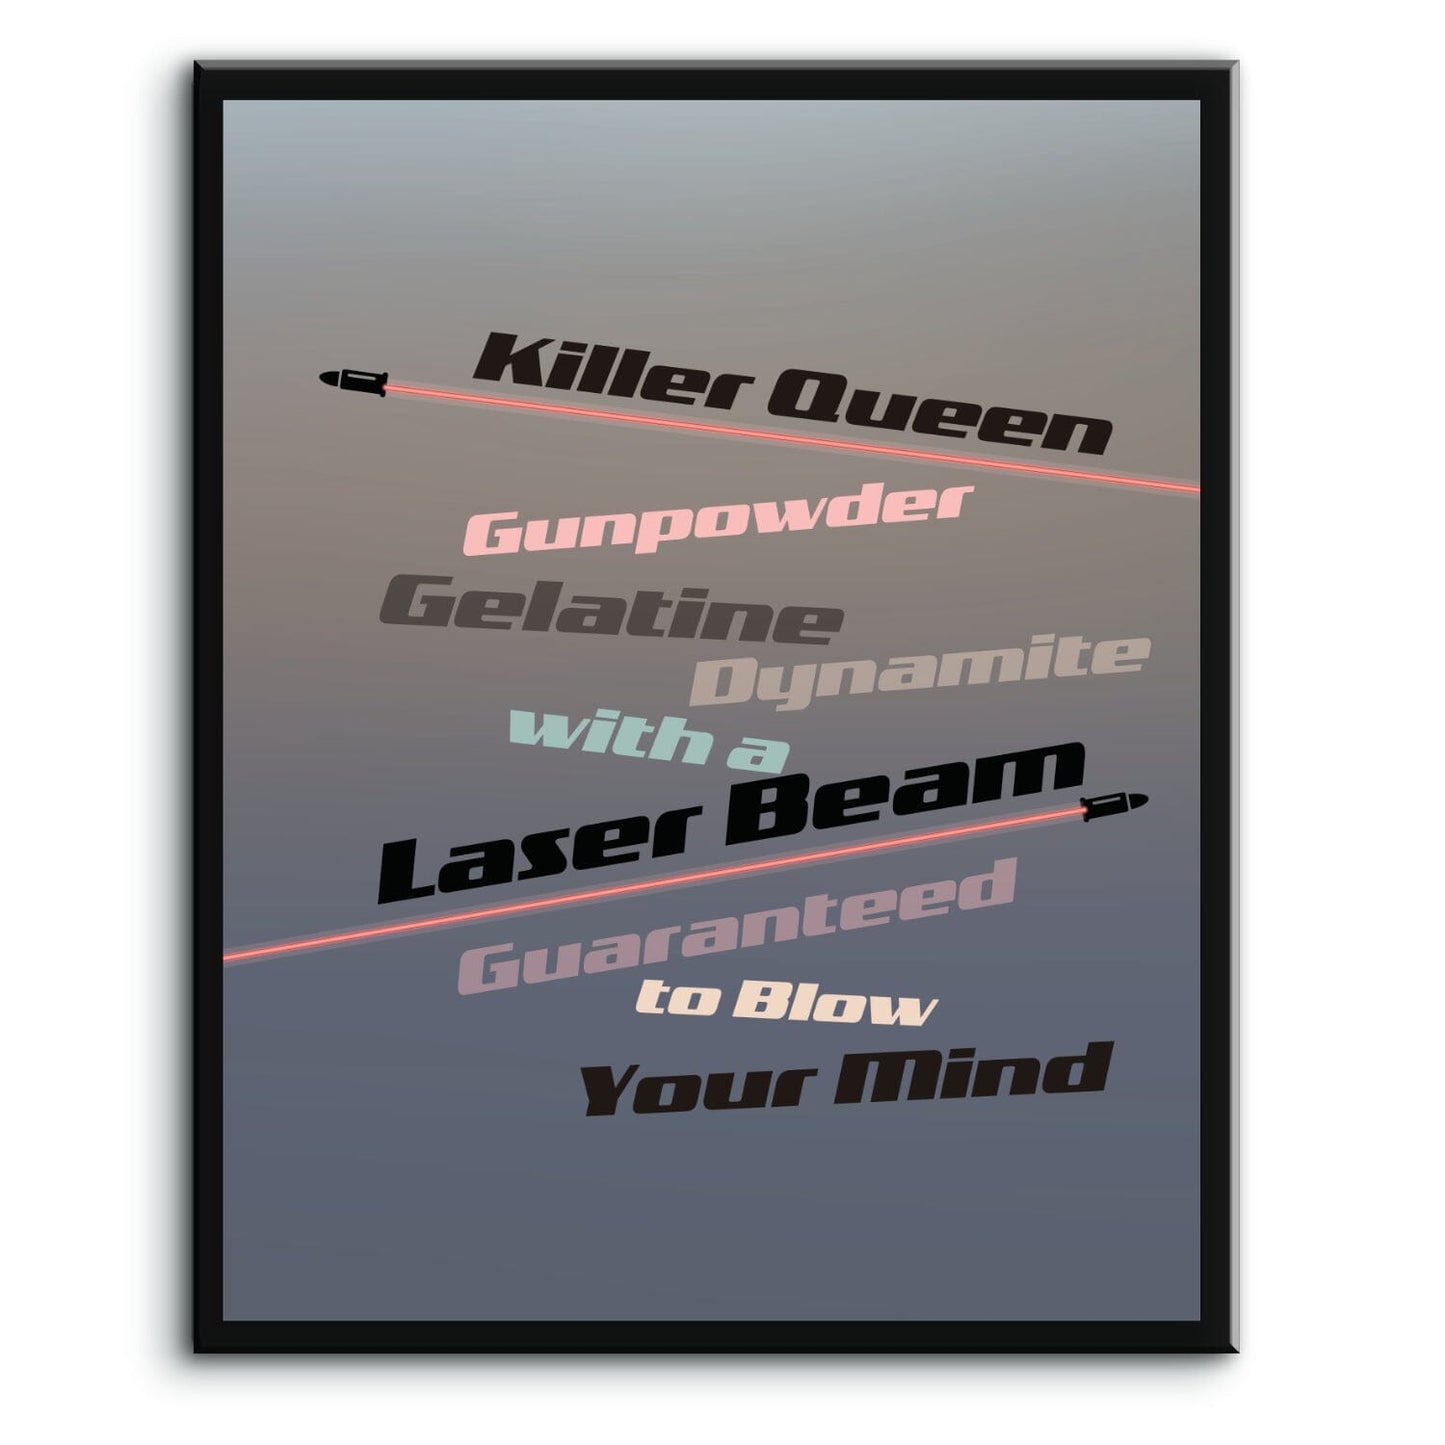 Killer Queen by Queen - Song Lyrics Inspired Art Wall Decor Song Lyrics Art Song Lyrics Art 8x10 Plaque Mount 